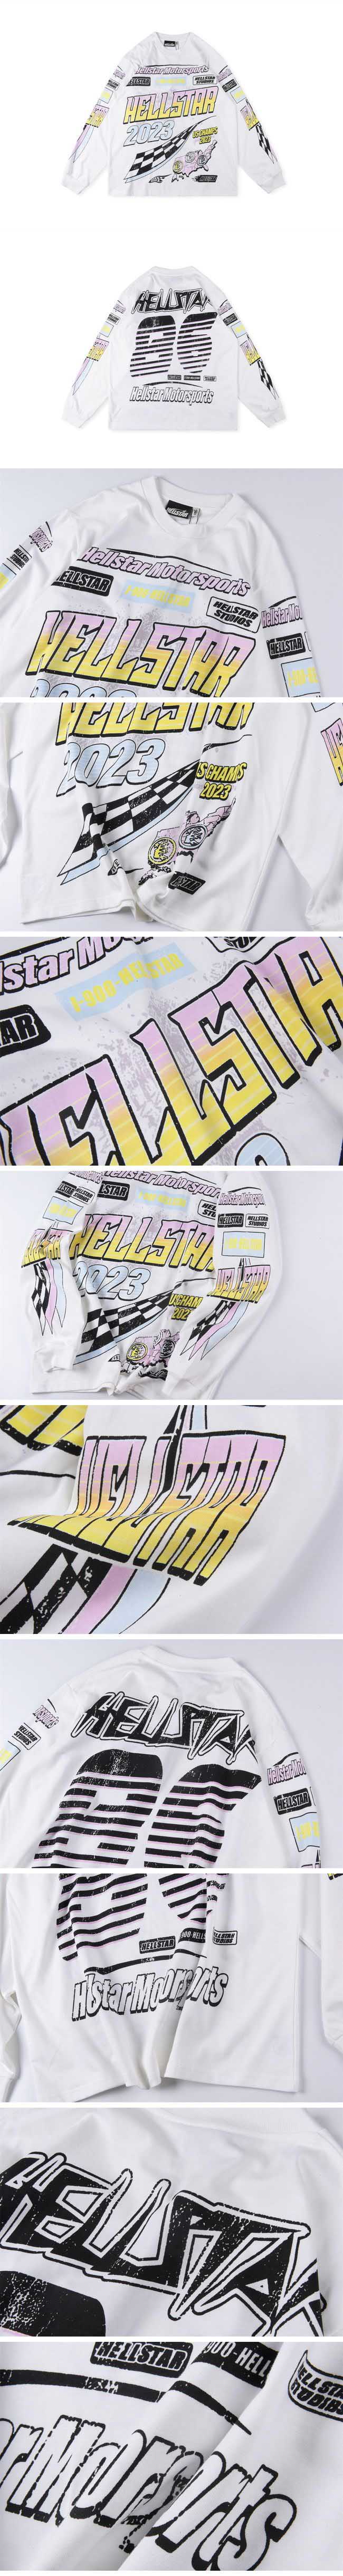 Hellstar Motorsports Designn Long Tee ヘルスター モータースポーツ デザイン ロングTシャツ